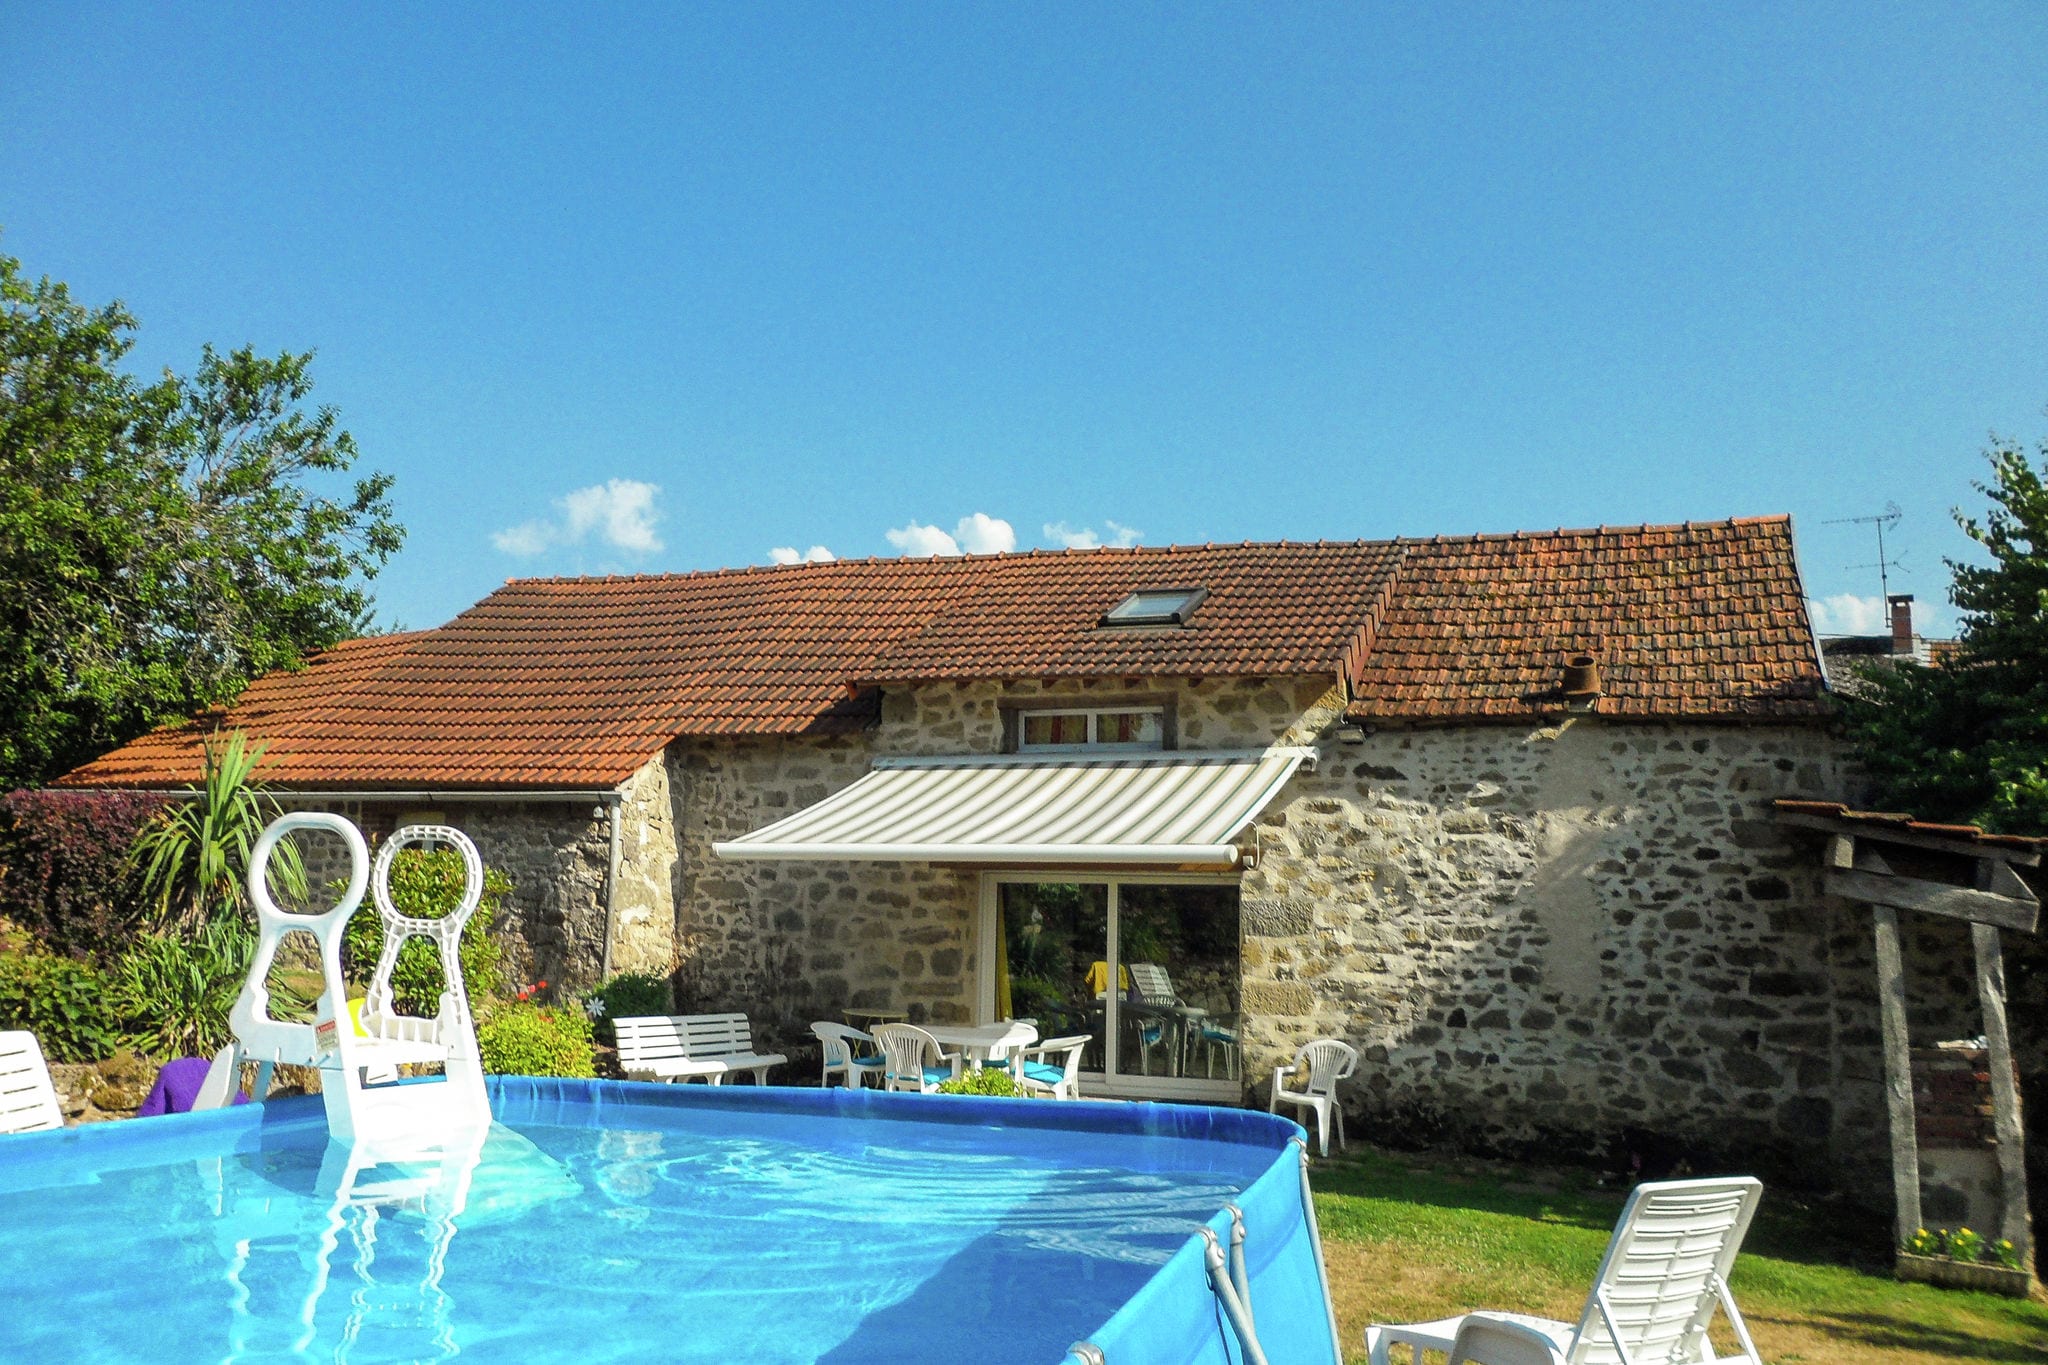 Gezellig vakantiehuis in rustige straat met privézwembad in midden van Frankrijk